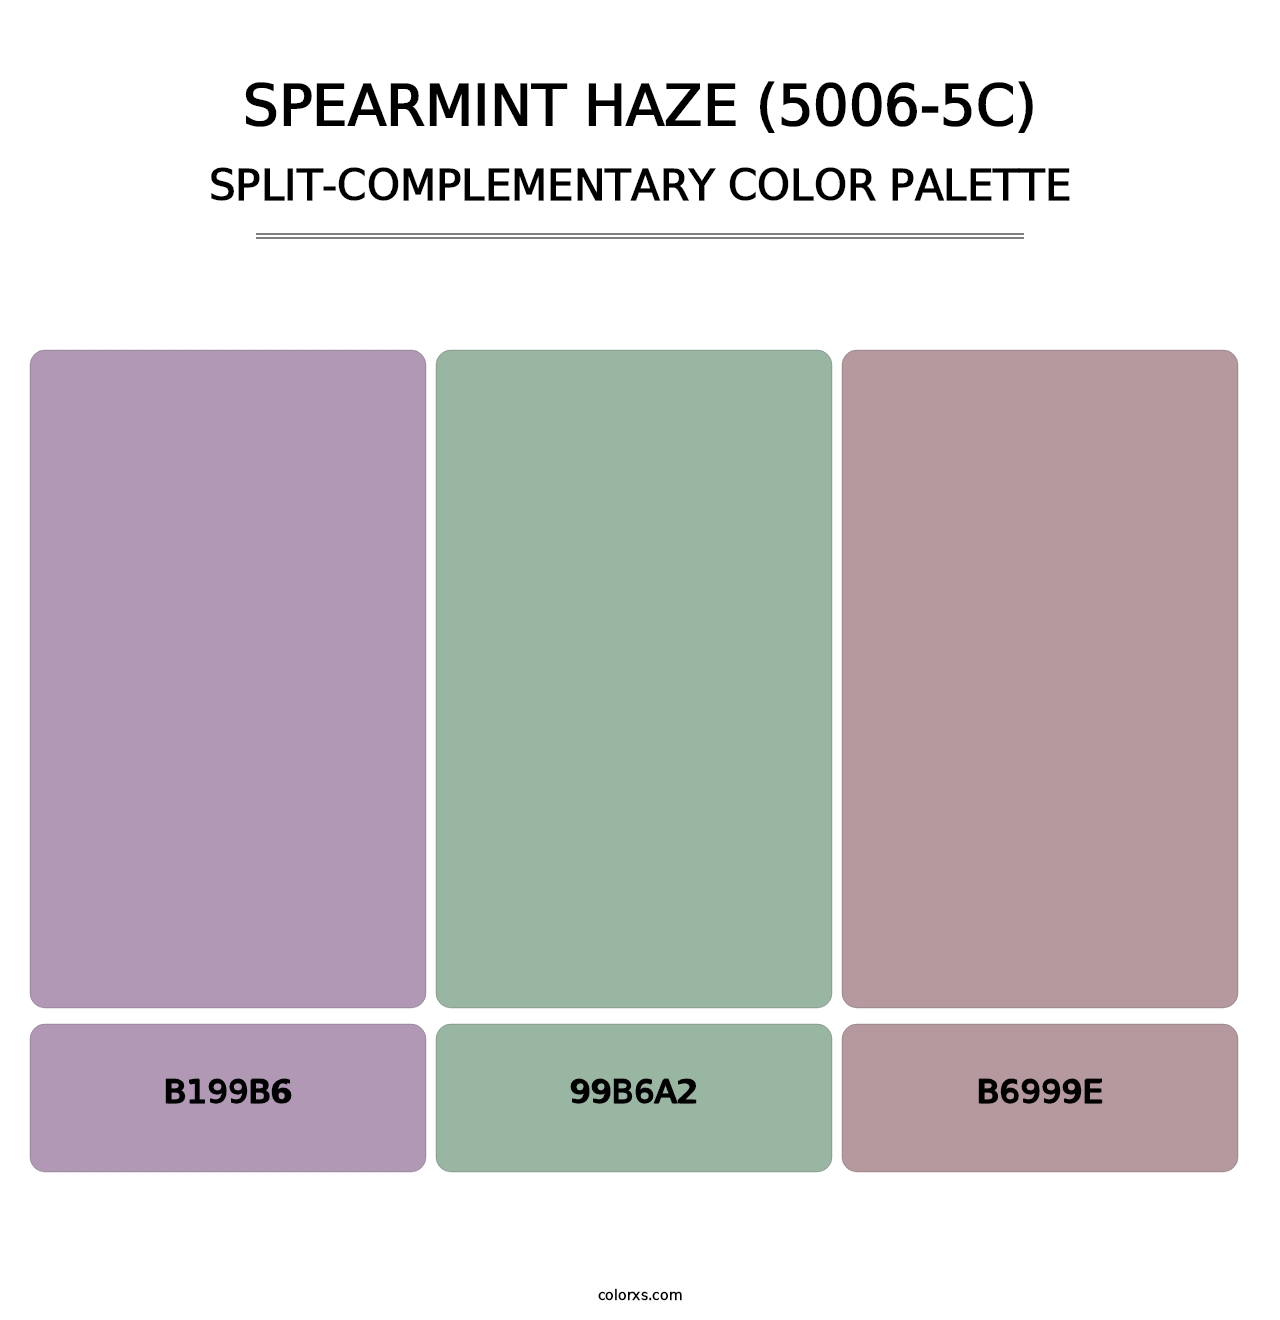 Spearmint Haze (5006-5C) - Split-Complementary Color Palette